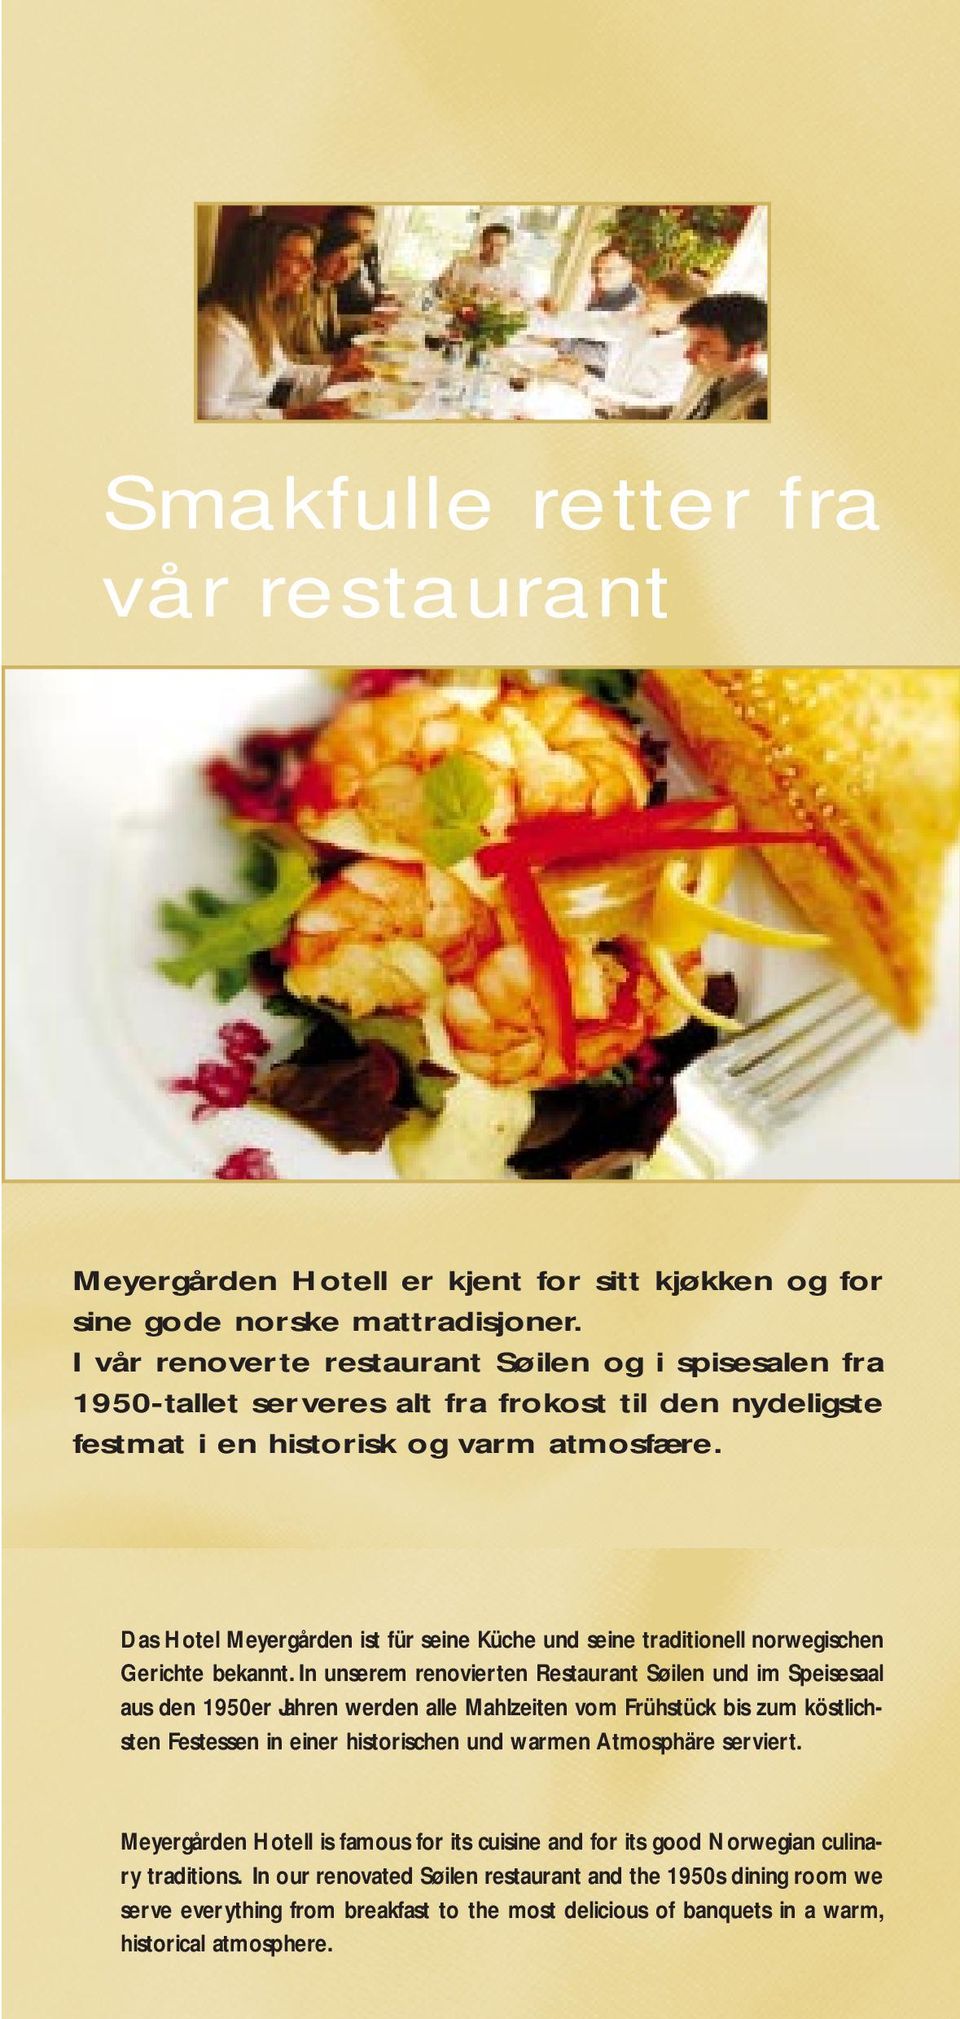 Das Hotel Meyergården ist für seine Küche und seine traditionell norwegischen Gerichte bekannt.